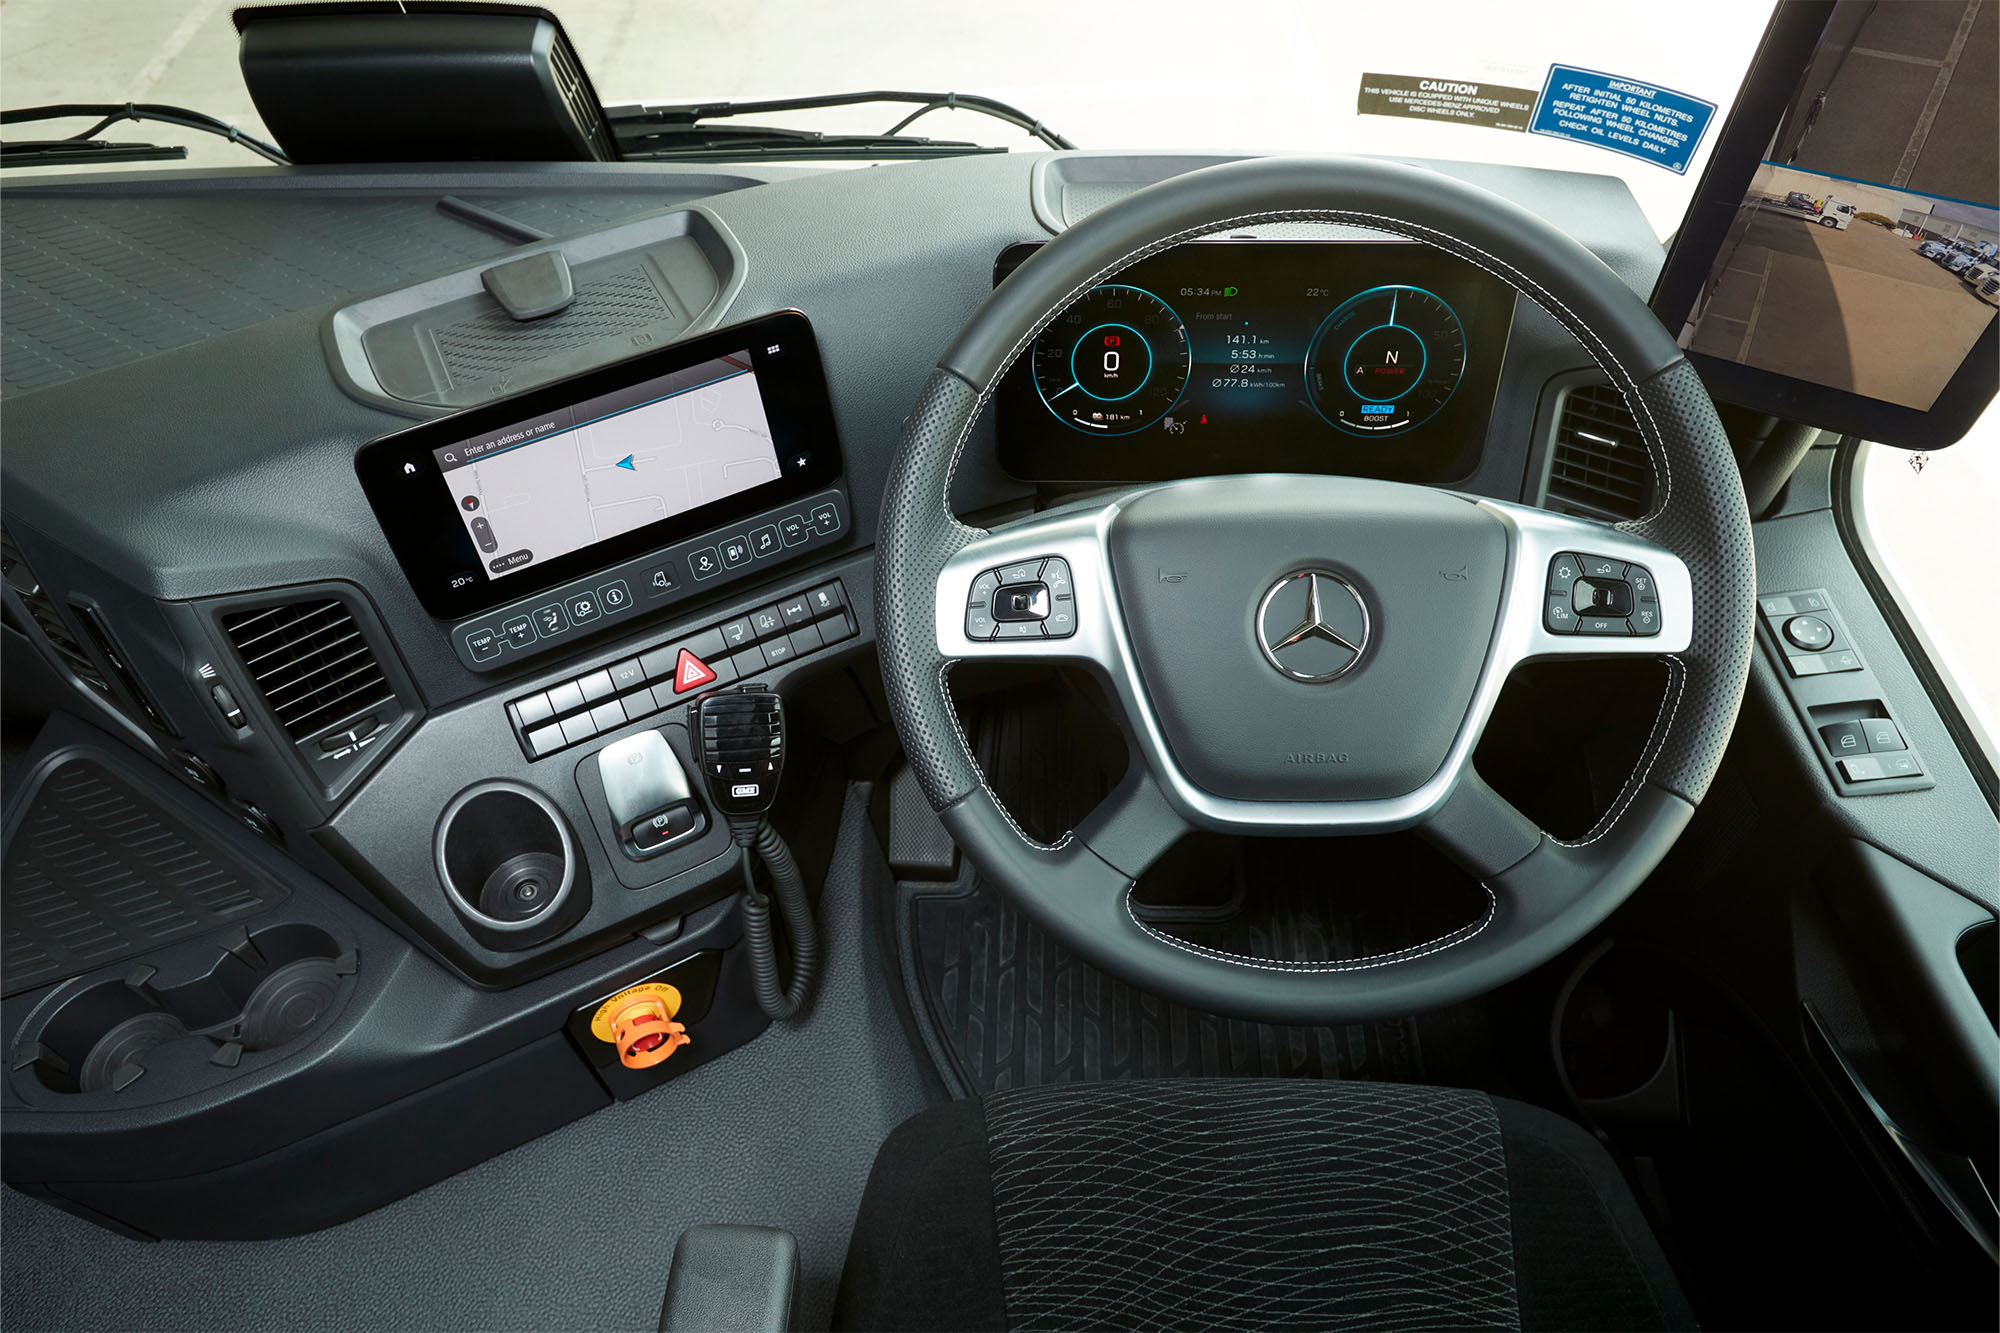  A Mercedes-Benz eActros cab